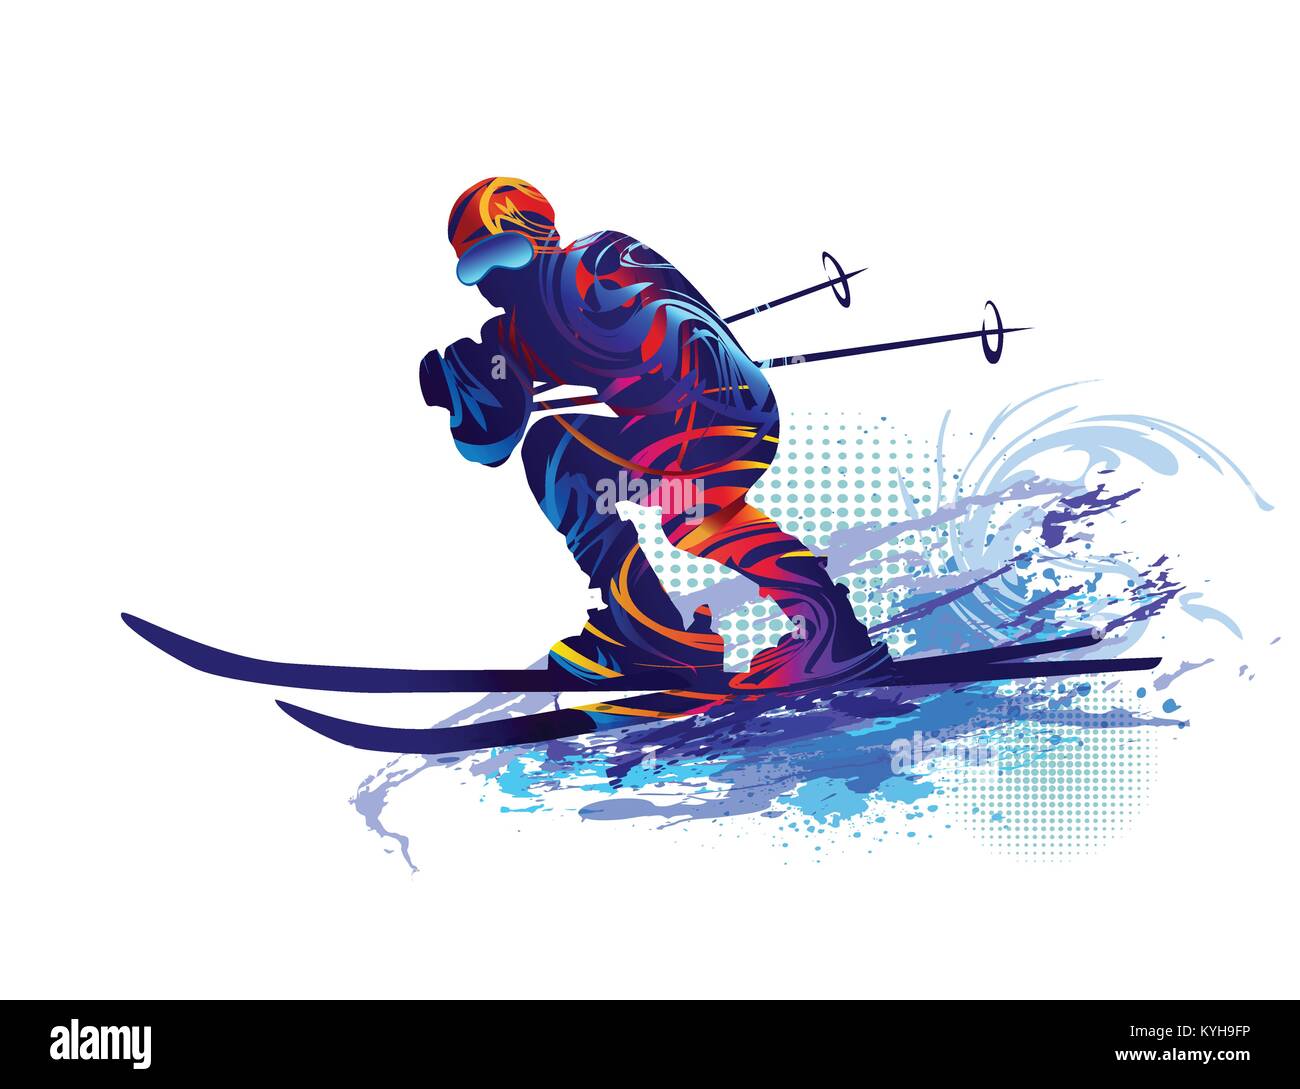 Skier. Vector illustration Stock Vector